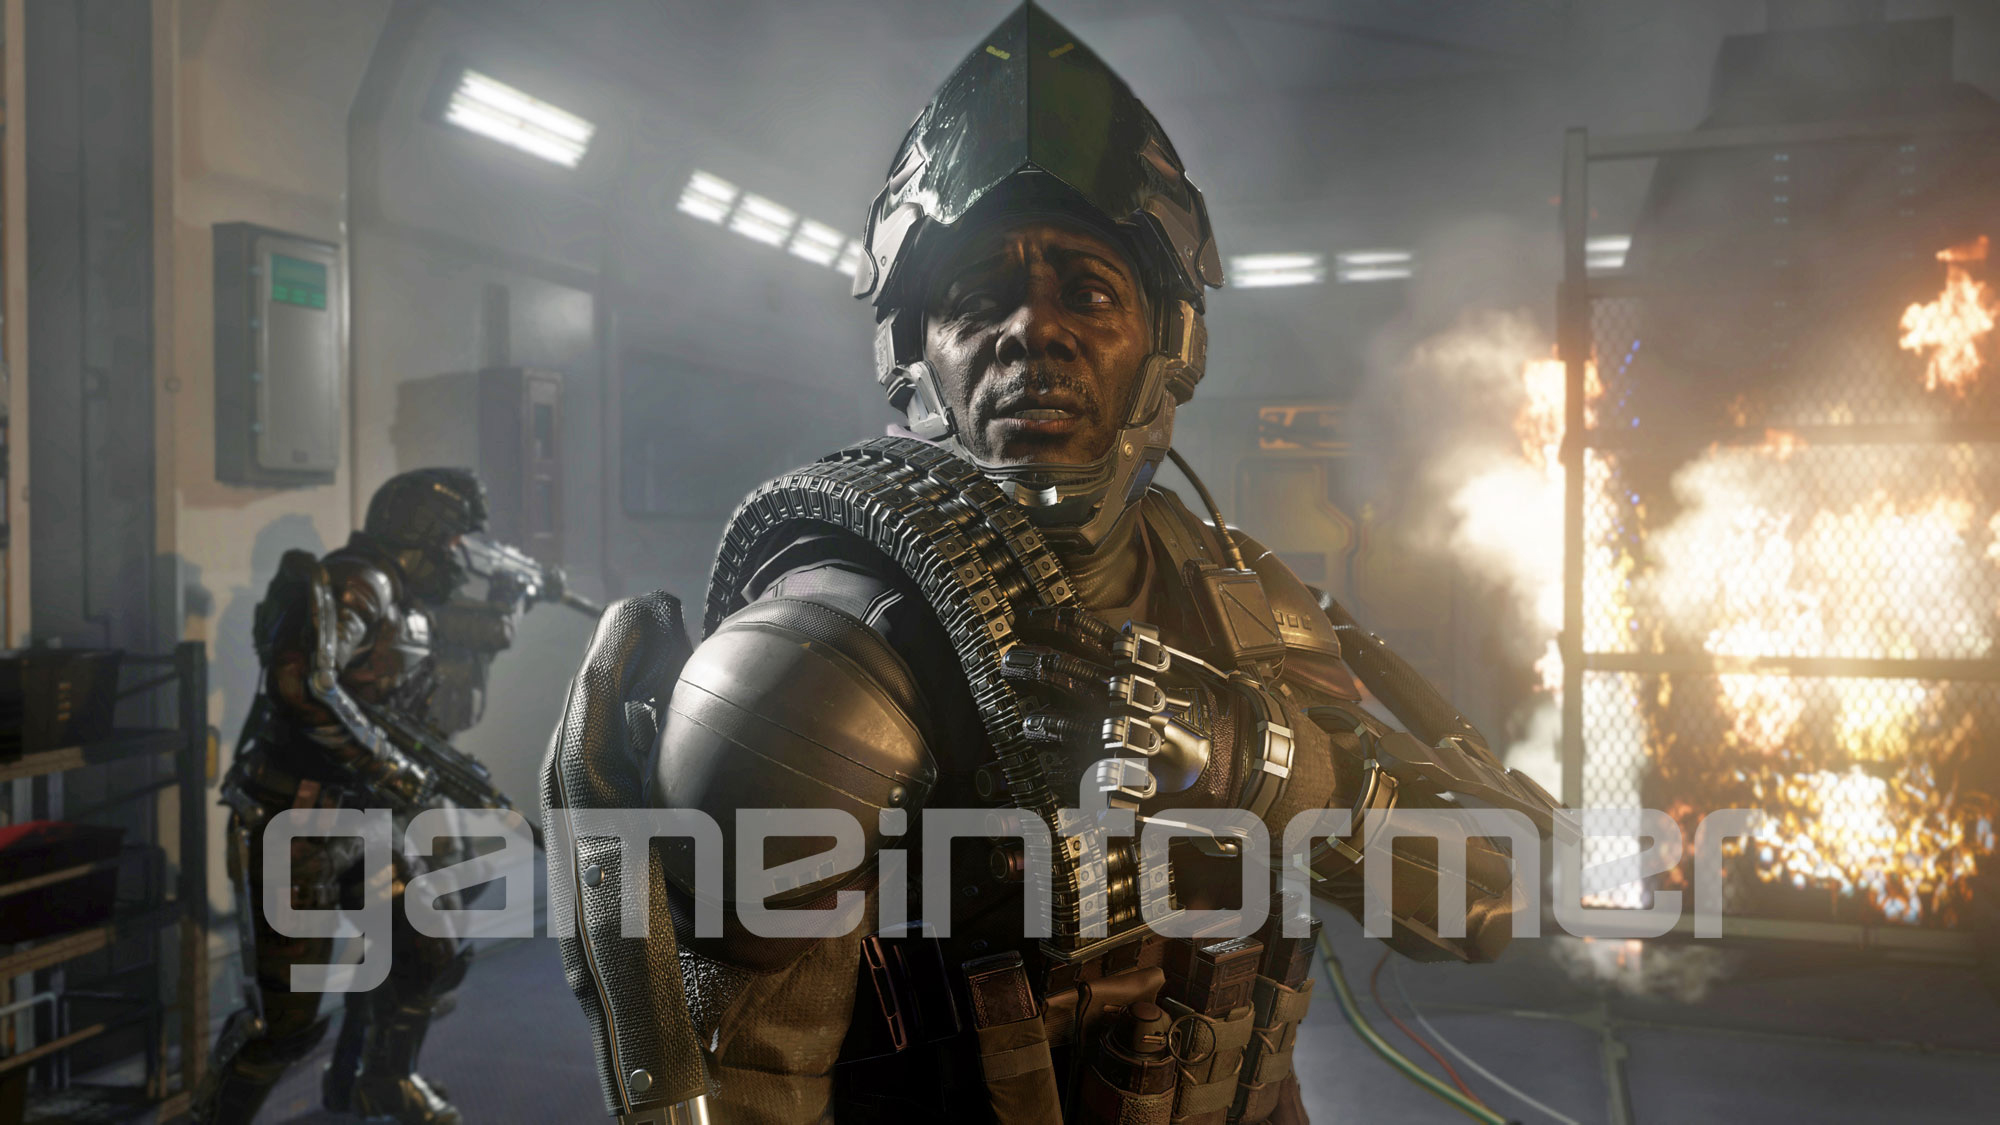 Immagine pubblicata in relazione al seguente contenuto: Partito il conto alla rovescia per i primi dettagli su Call of Duty 2014 | Nome immagine: news21133_Call-of-Duty-2014-screenshot_1.jpg